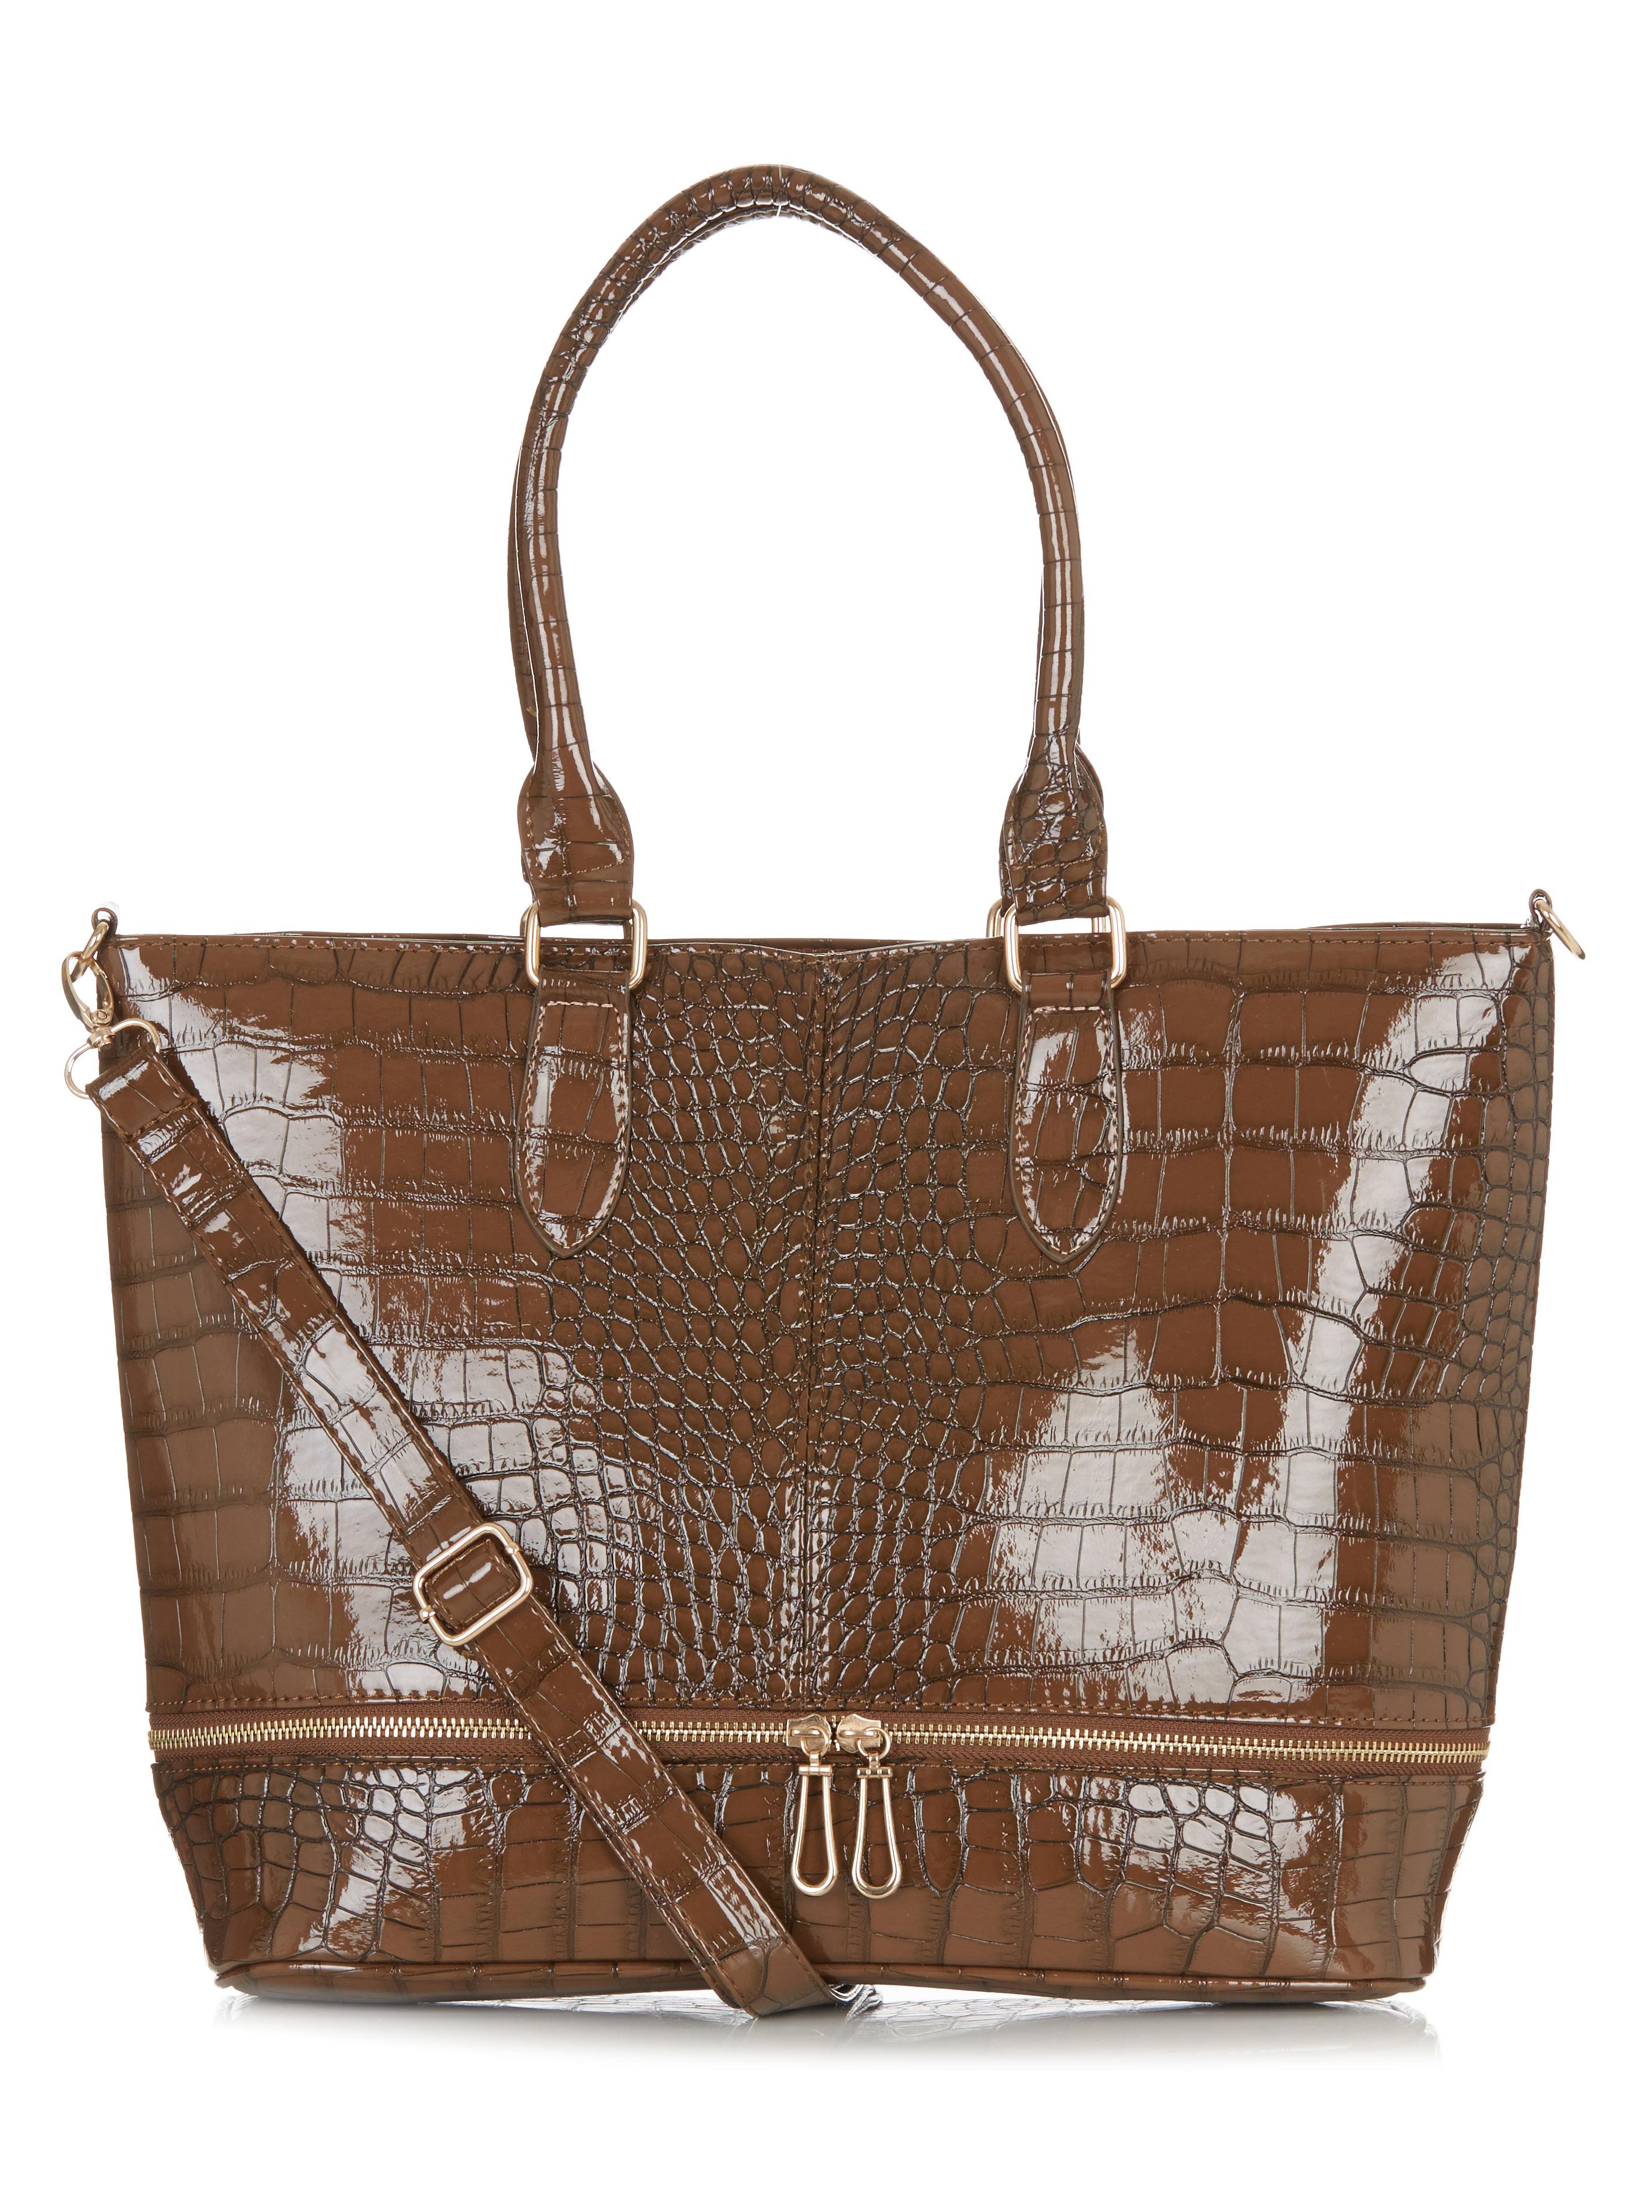 Croc Handbag Tan Dazzle Bags & Purses | Superbalist.com